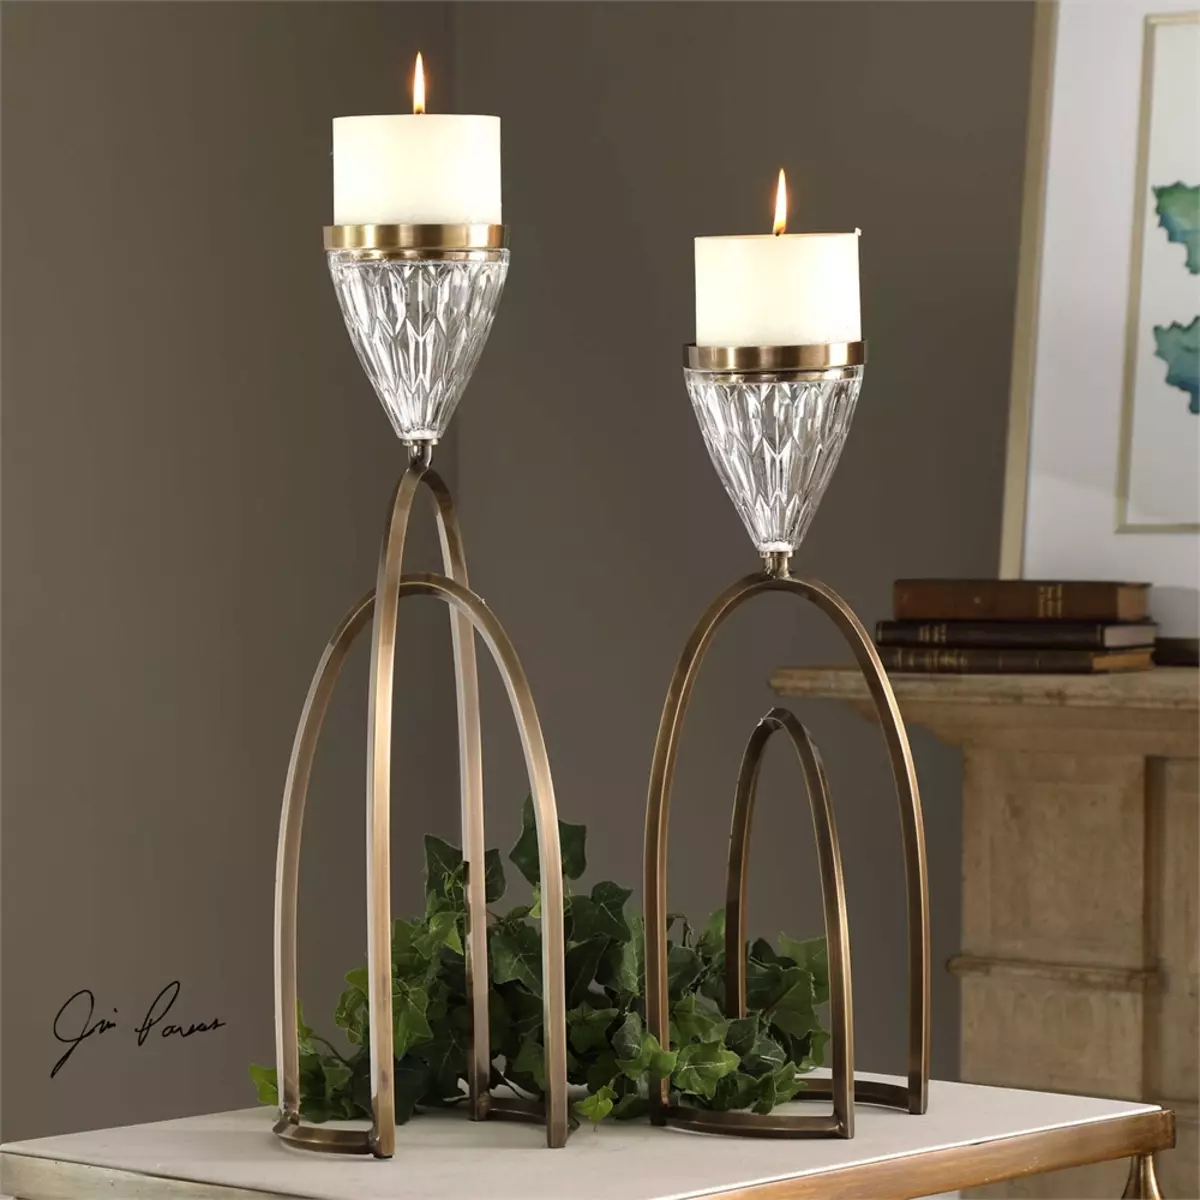 Метални свеќници: метален црн свеќник и злато, една свеќа и 5 свеќи, во форма на елени и други железо декоративни свеќници 13157_2